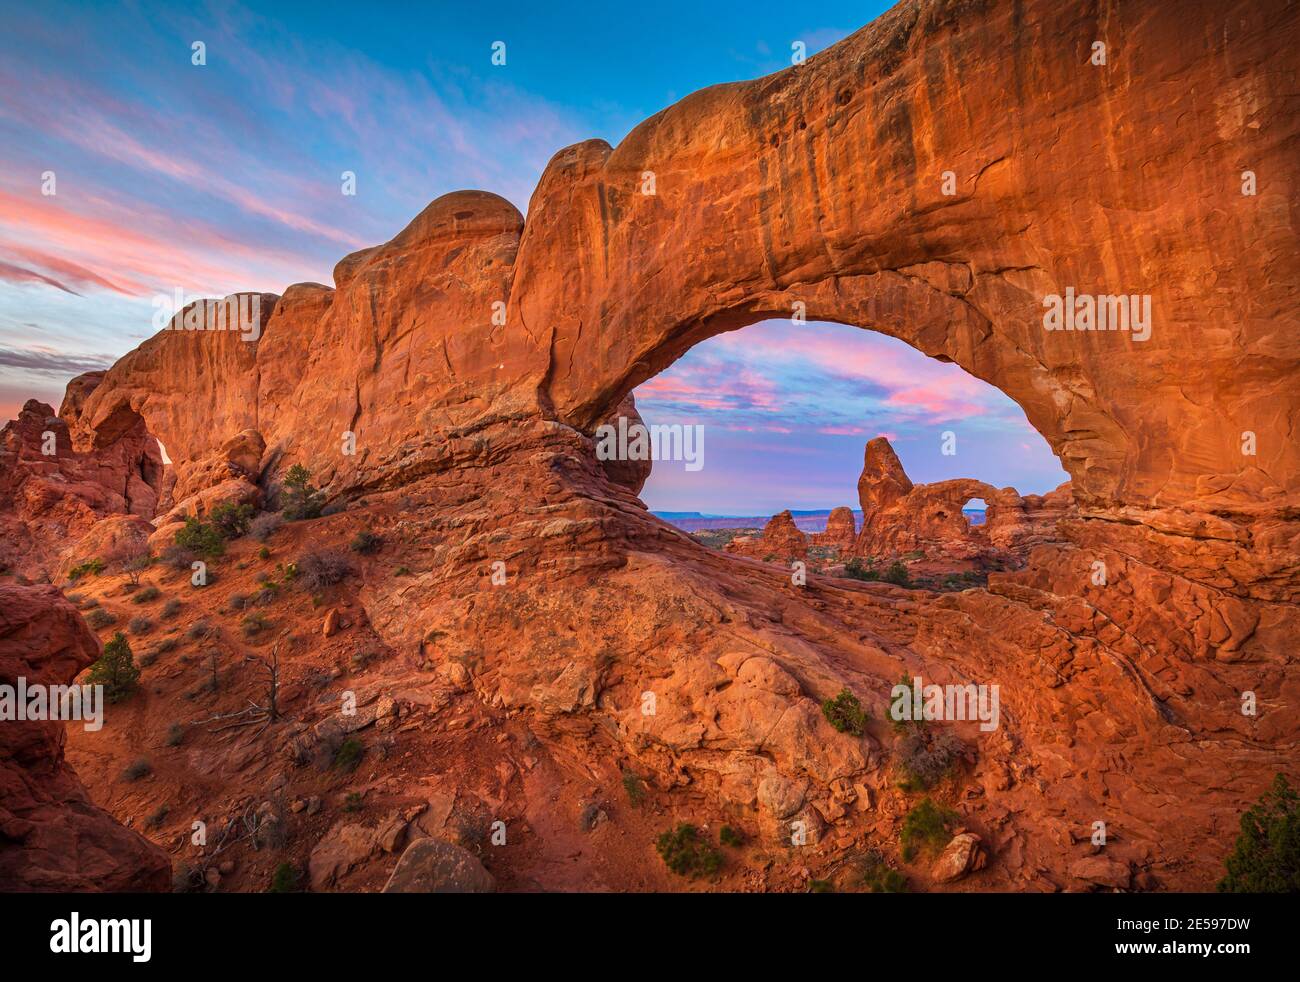 Arches National Park è un parco nazionale degli Stati Uniti nello Utah orientale. Il parco si trova sul fiume Colorado a 6.4 km a nord di Moab, Utah. Foto Stock